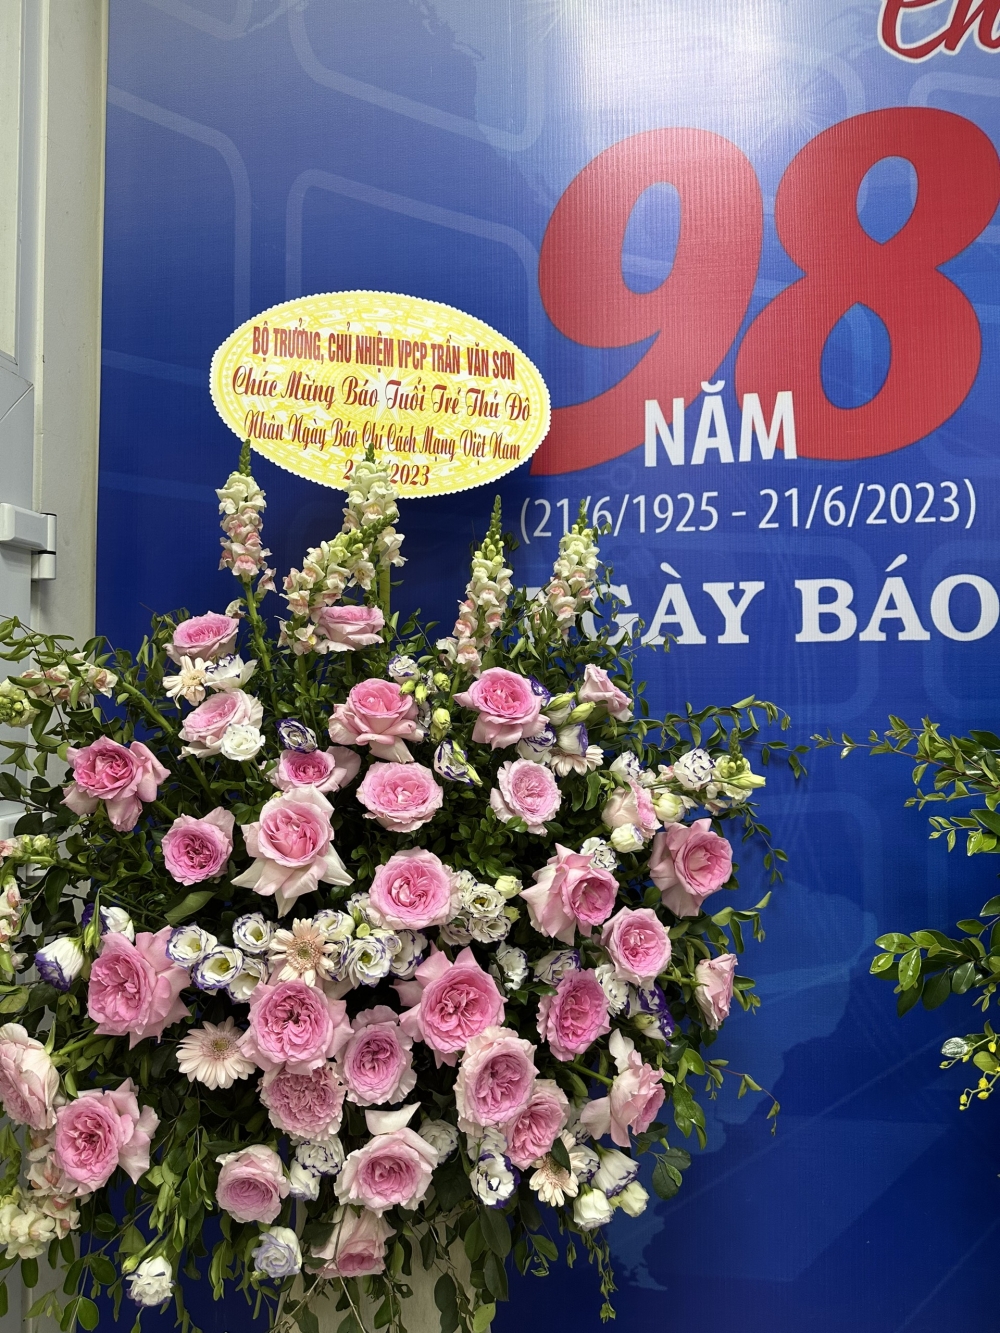 Cũng nhân dịp này, Bộ trưởng, Chủ nhiệm Văn phòng Chính phủ Trần Văn Sơn gửi lẵng hoa và lời chúc tới cán bộ, biên tập viên, phóng viên, người lao động của Báo.